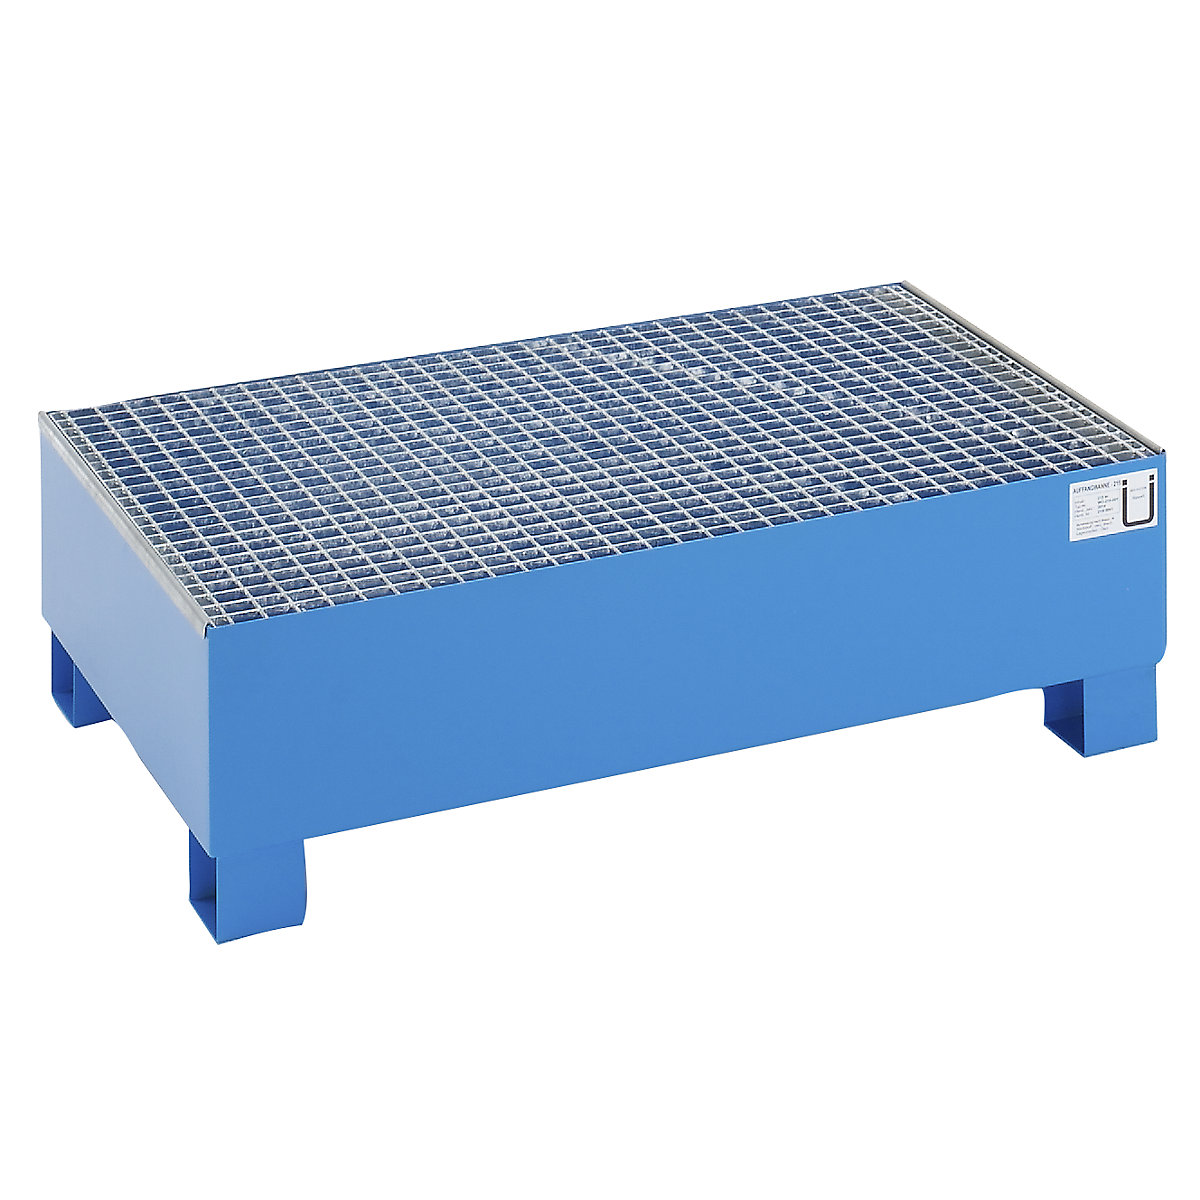 EUROKRAFTbasic Stahl-Auffangwanne für 200-l-Fässer, LxBxH 1200 x 800 x 360 mm, mit Zulassung, blau pulverbeschichtet, mit Gitterrost